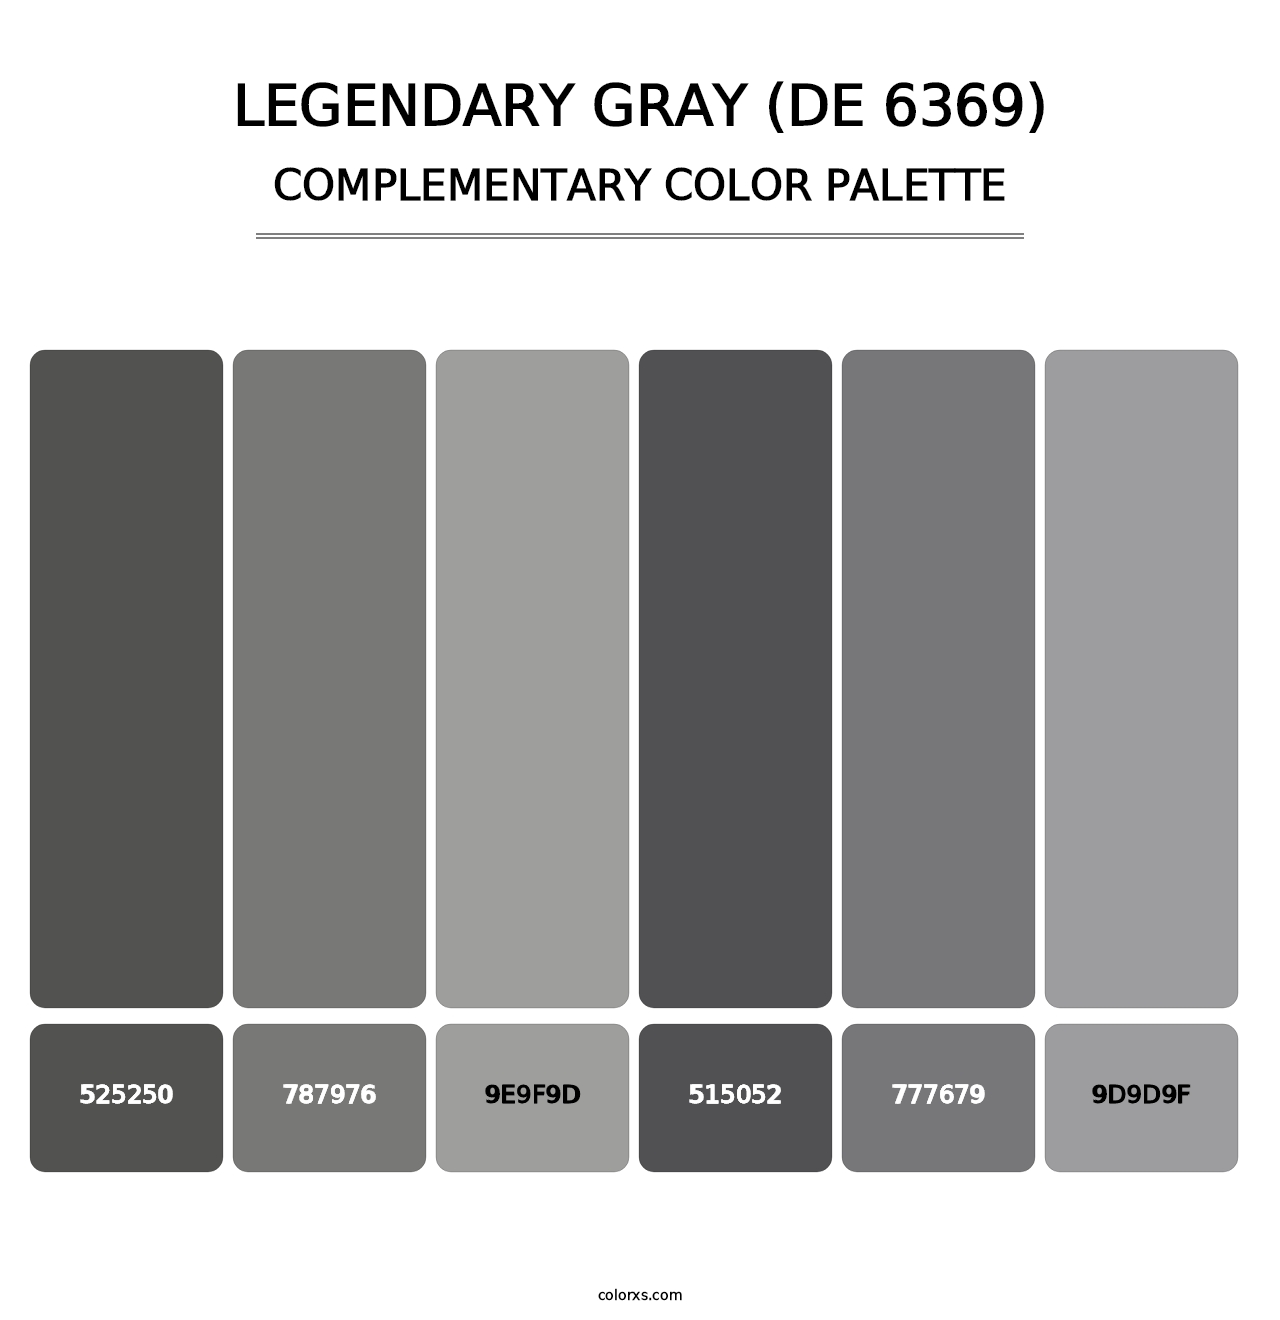 Legendary Gray (DE 6369) - Complementary Color Palette